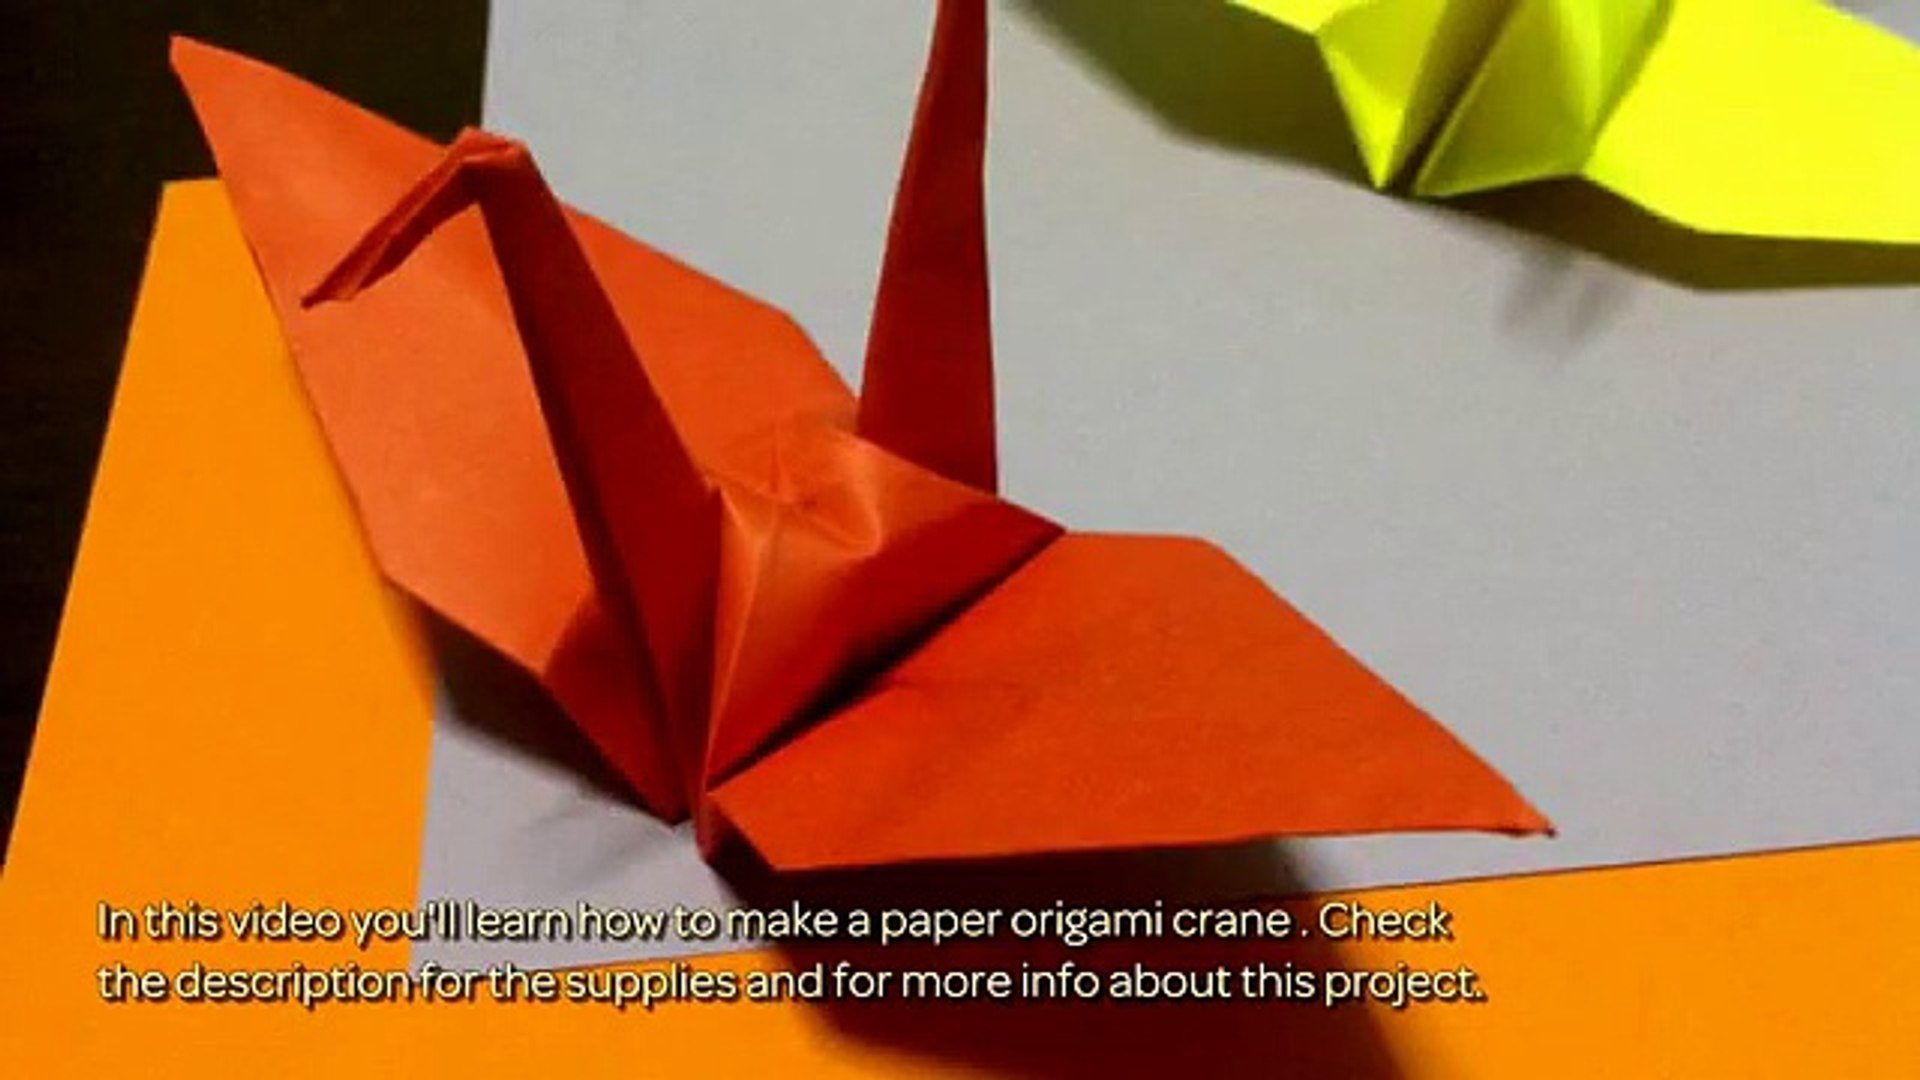 Crane Origami Video Make A Paper Origami Crane Crafts Guidecentral